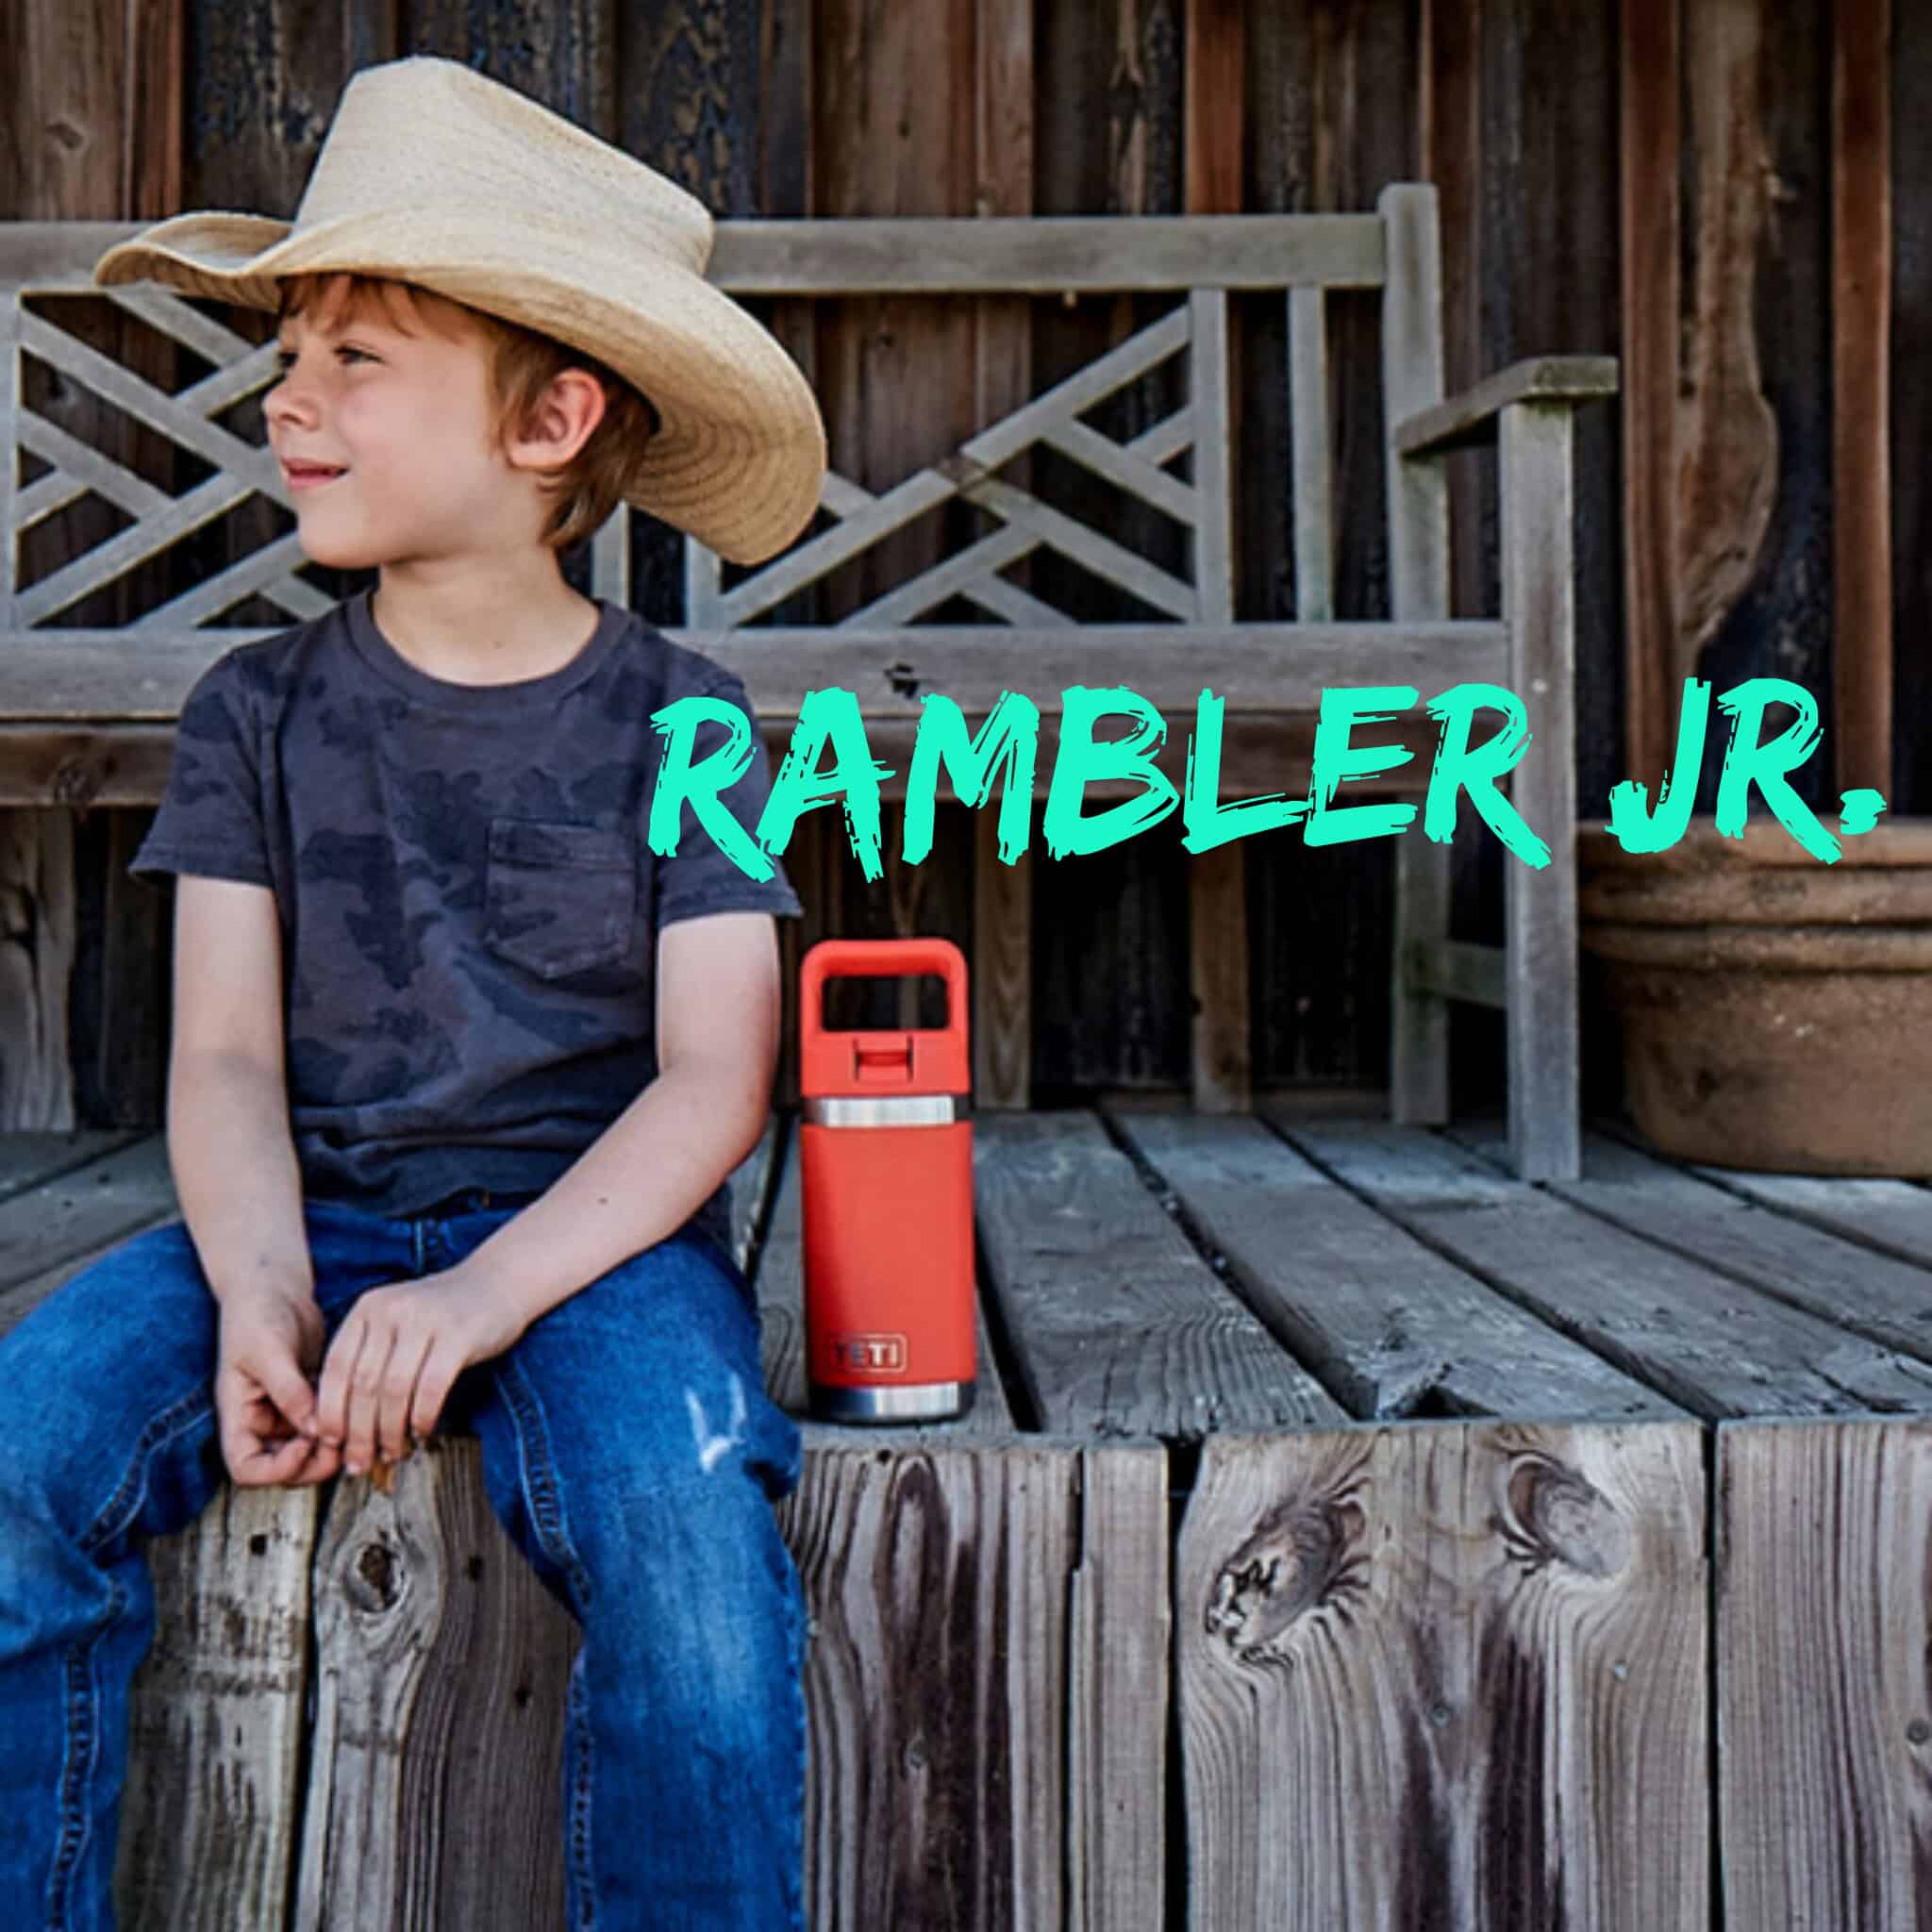 Yeti Rambler Jr. Kids Bottle